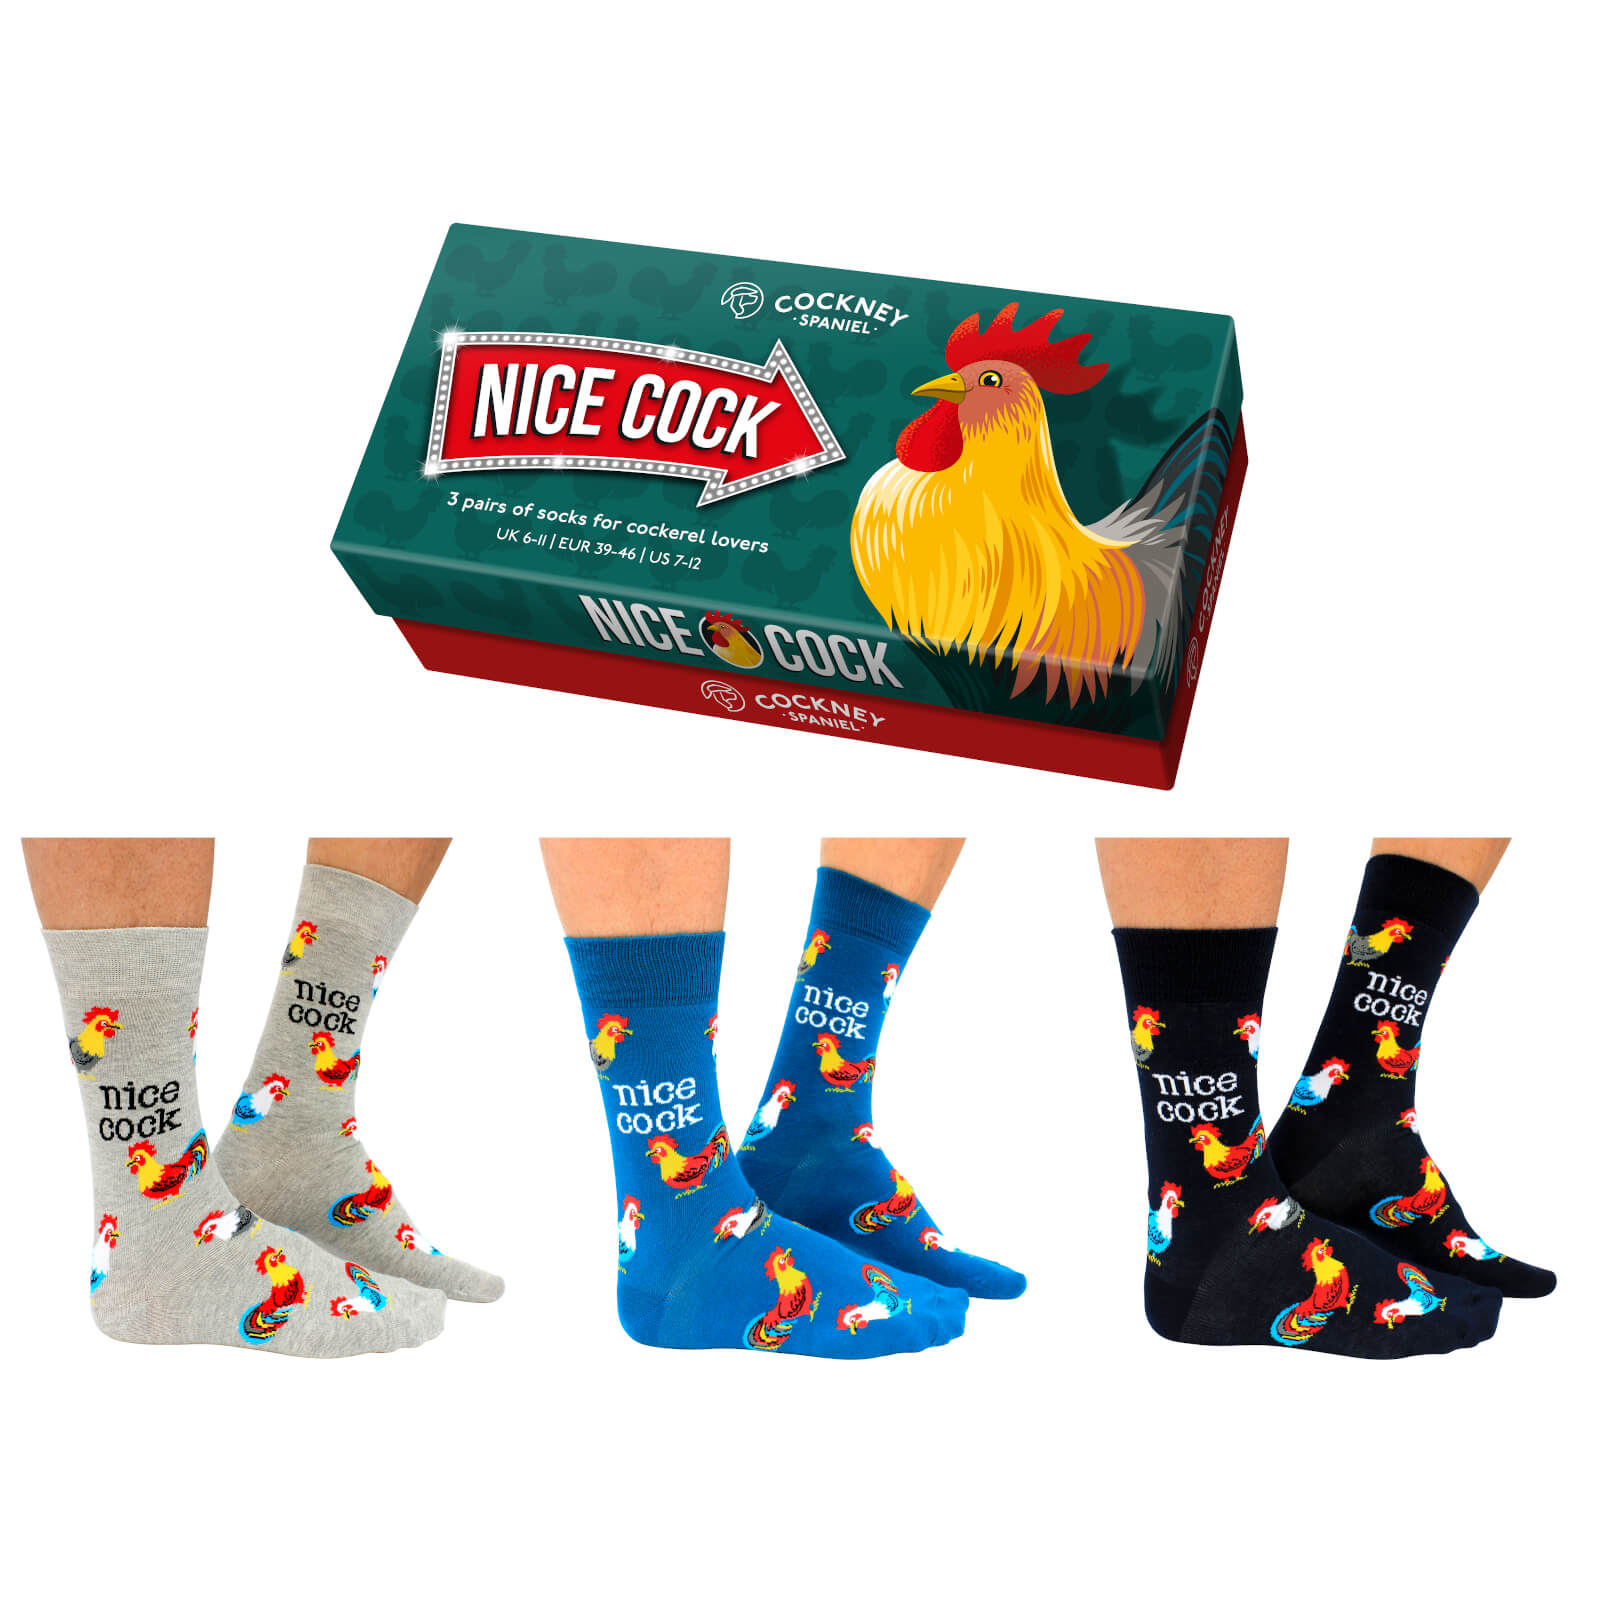 Cockney Spaniel 'Nice Cock' Sock Gift Set